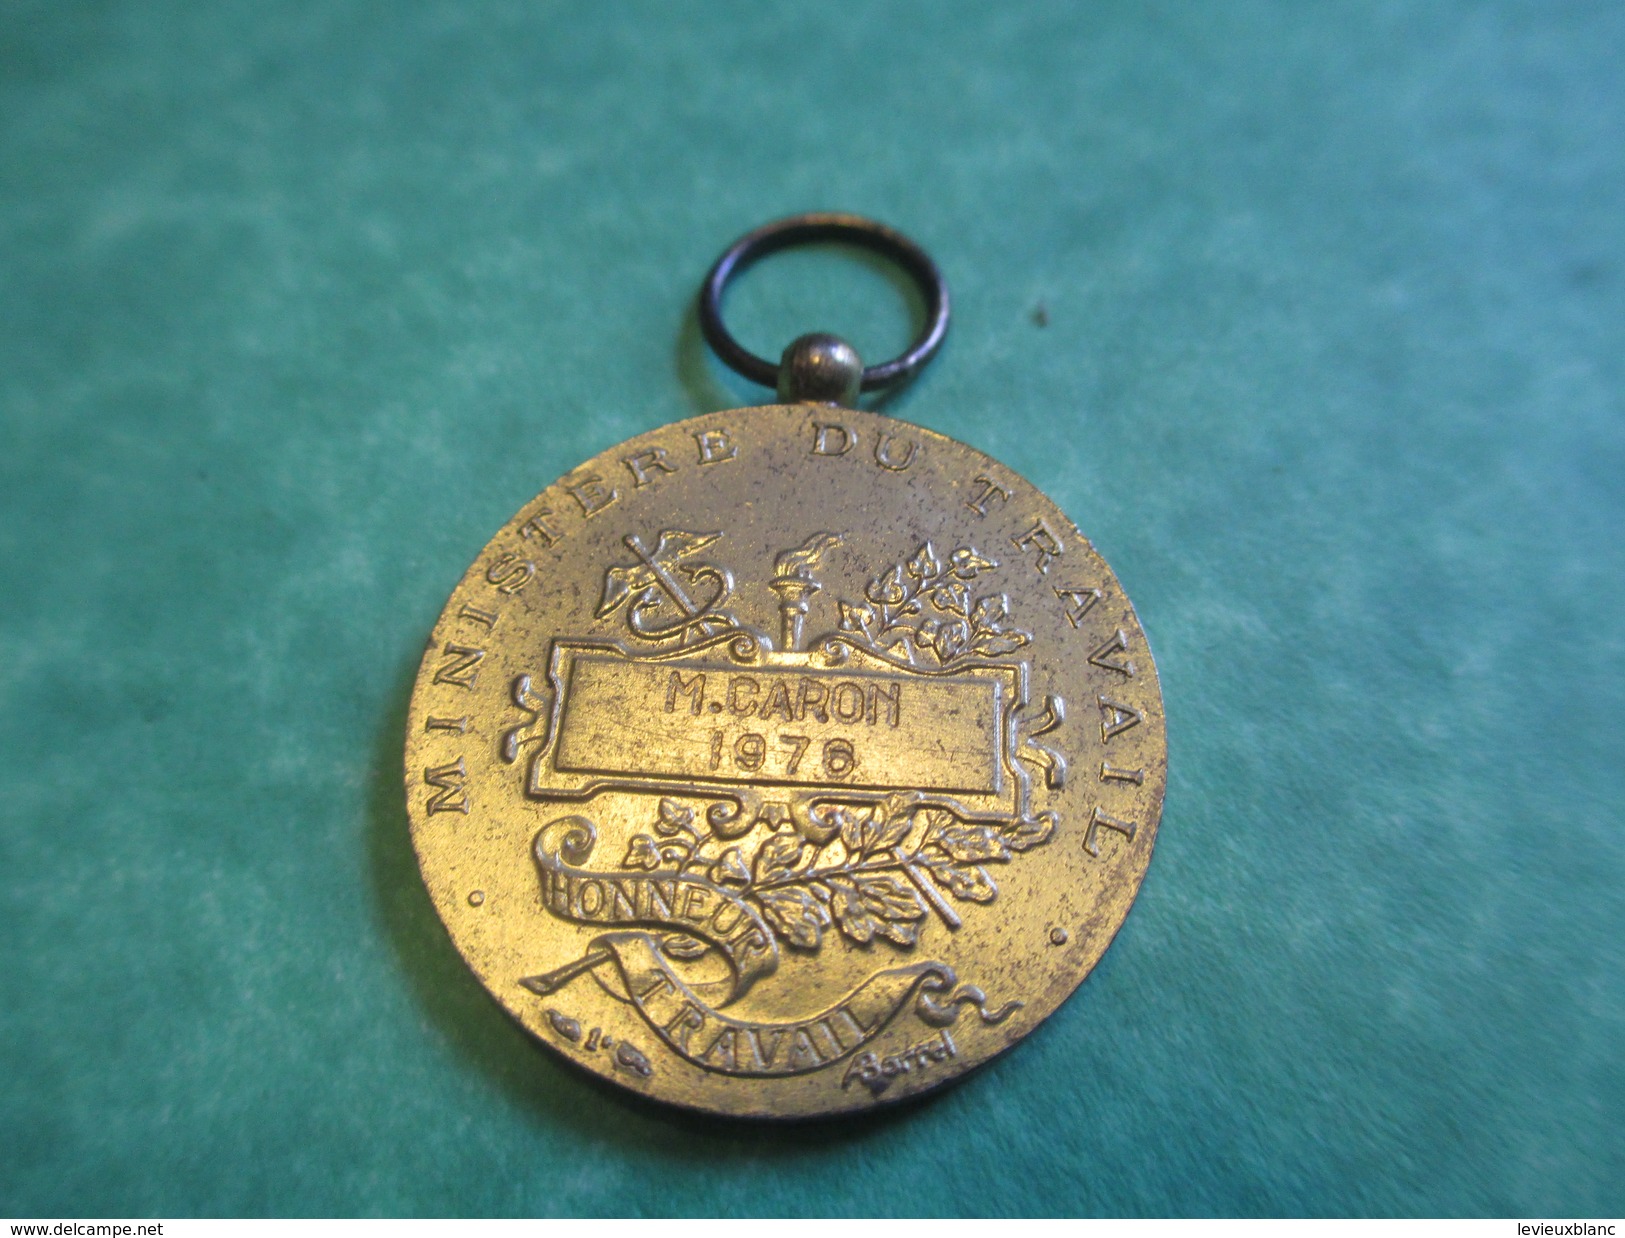 Médaille Du Travail/France/Or/Ministère Du Travail/Sans Ruban/Attribuée/M CARON / Honneur Travail/ 1976   MED100 - France